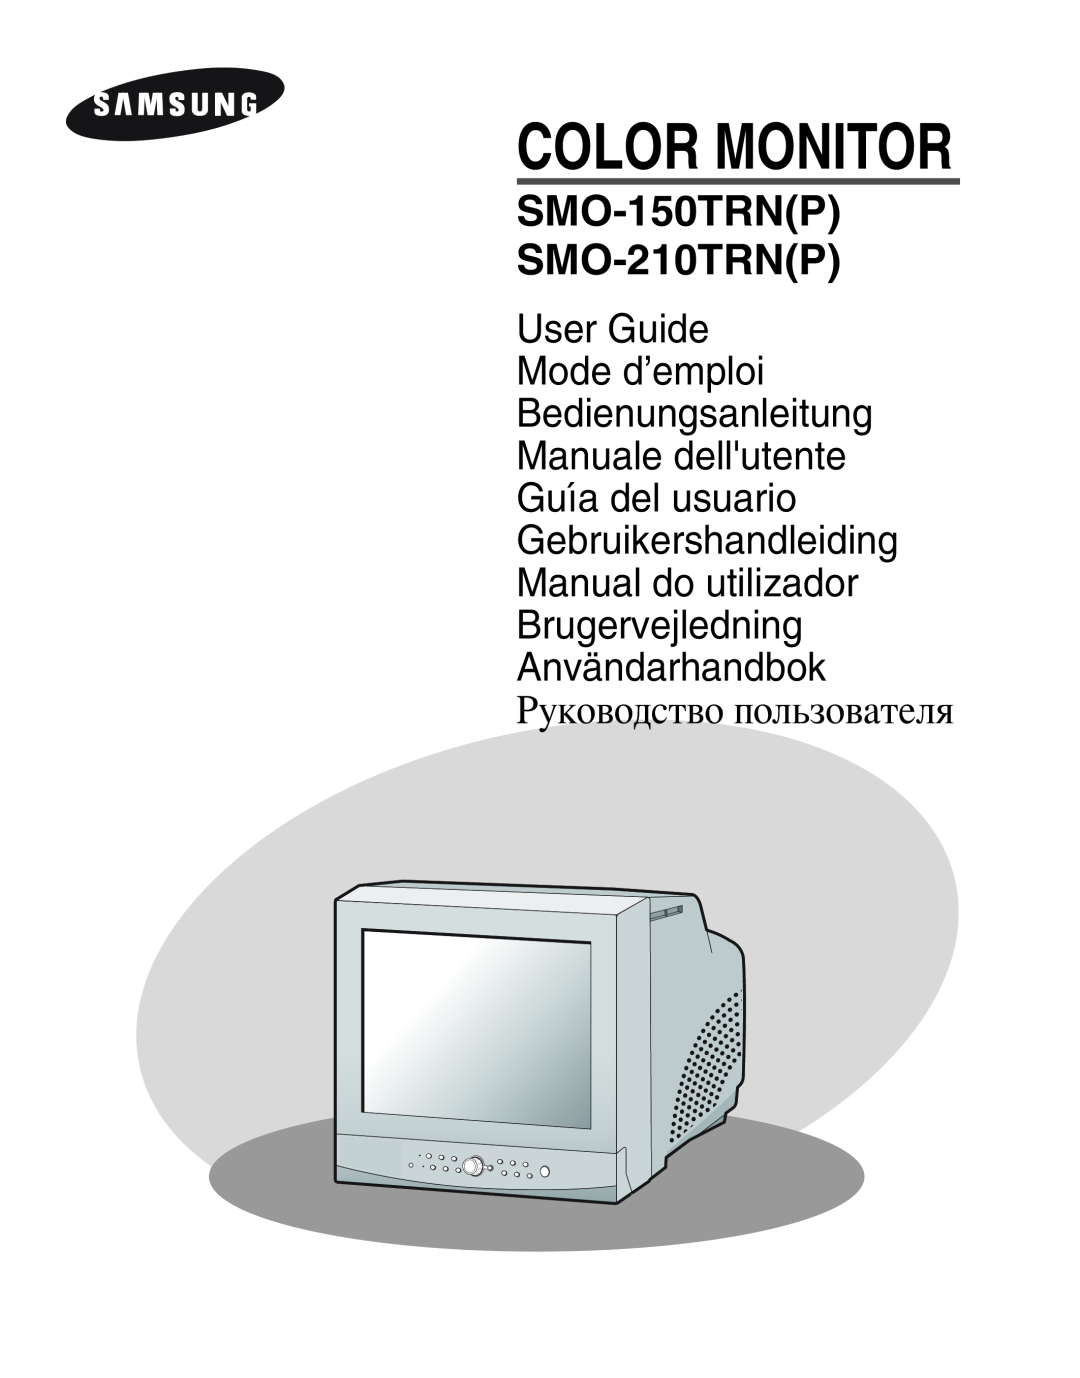 Samsung SMO-210MP/UMG, SMO-210TRP manual Color Monitor, SMO-150TRNP SMO-210TRNP, оводство пользователя 